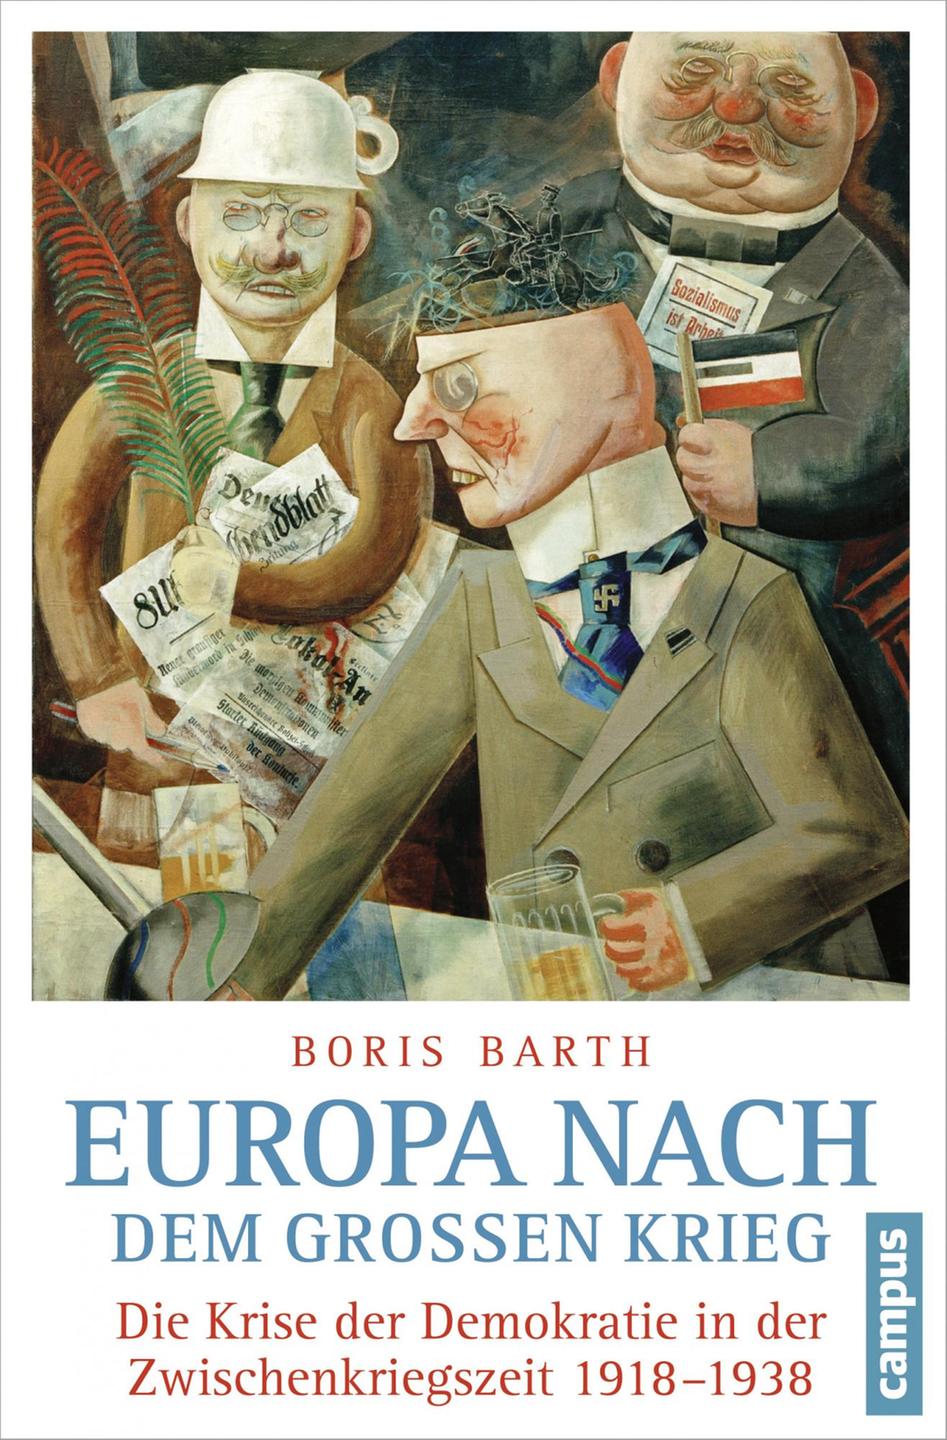 Boris Barth: Europa nach dem großen Krieg - Die Krise der Demokratie in der Zwischenkriegszeit  1918-1938